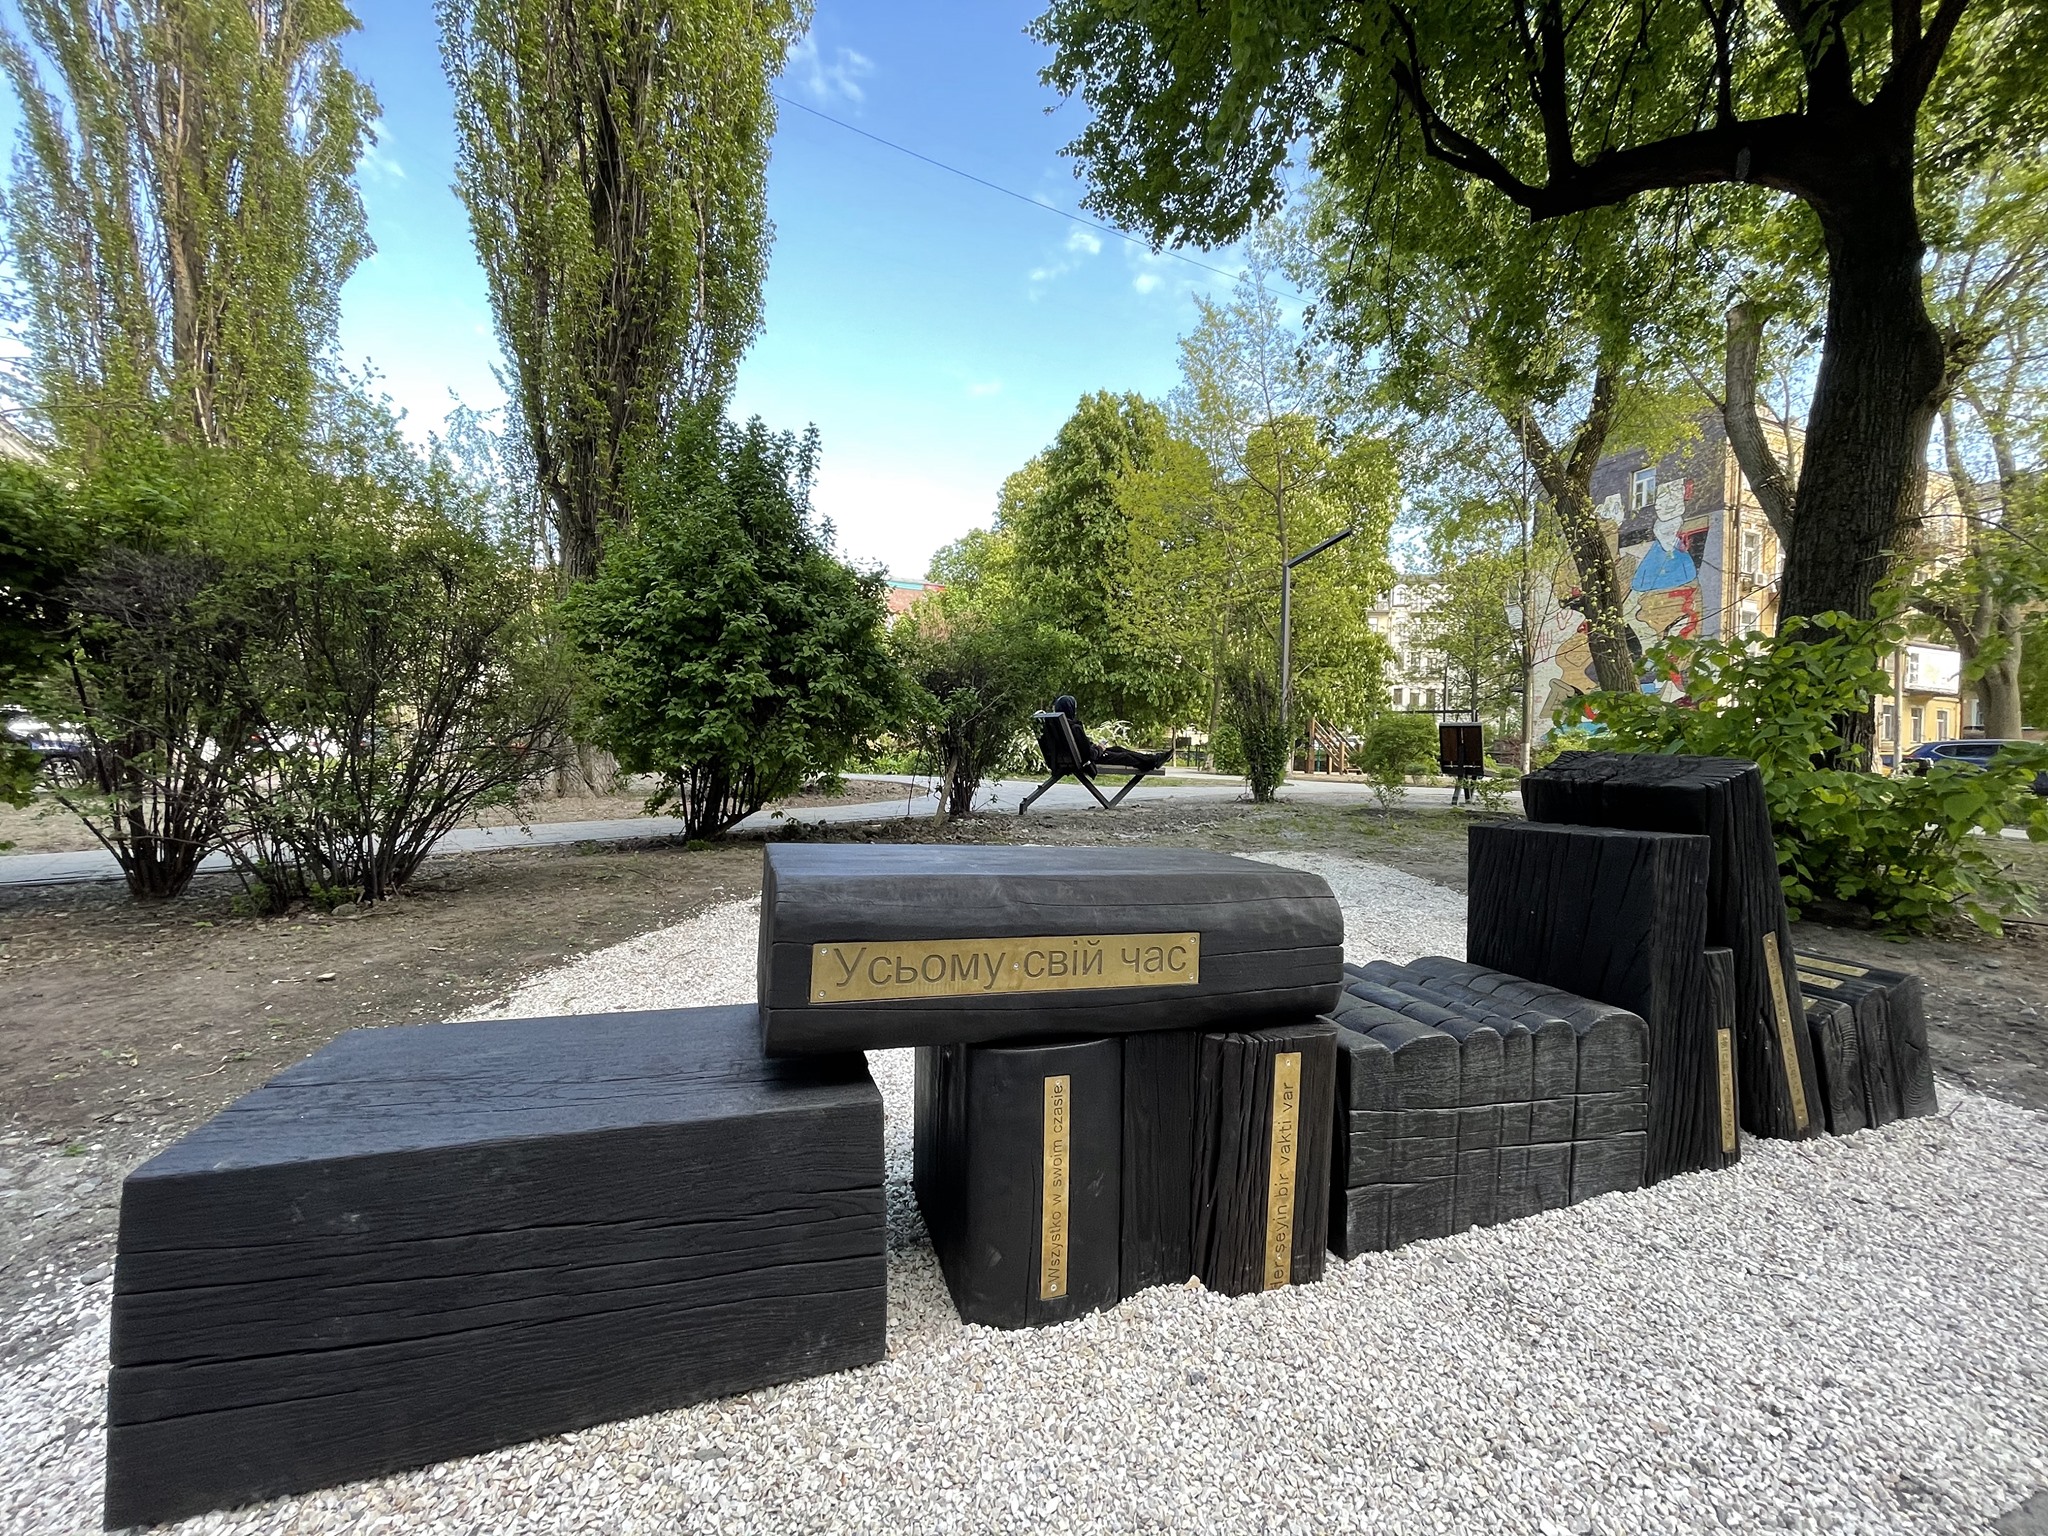 У центрі Києва з’явилася арт-інсталяція «Усьому свій час» у формі лави з книжок